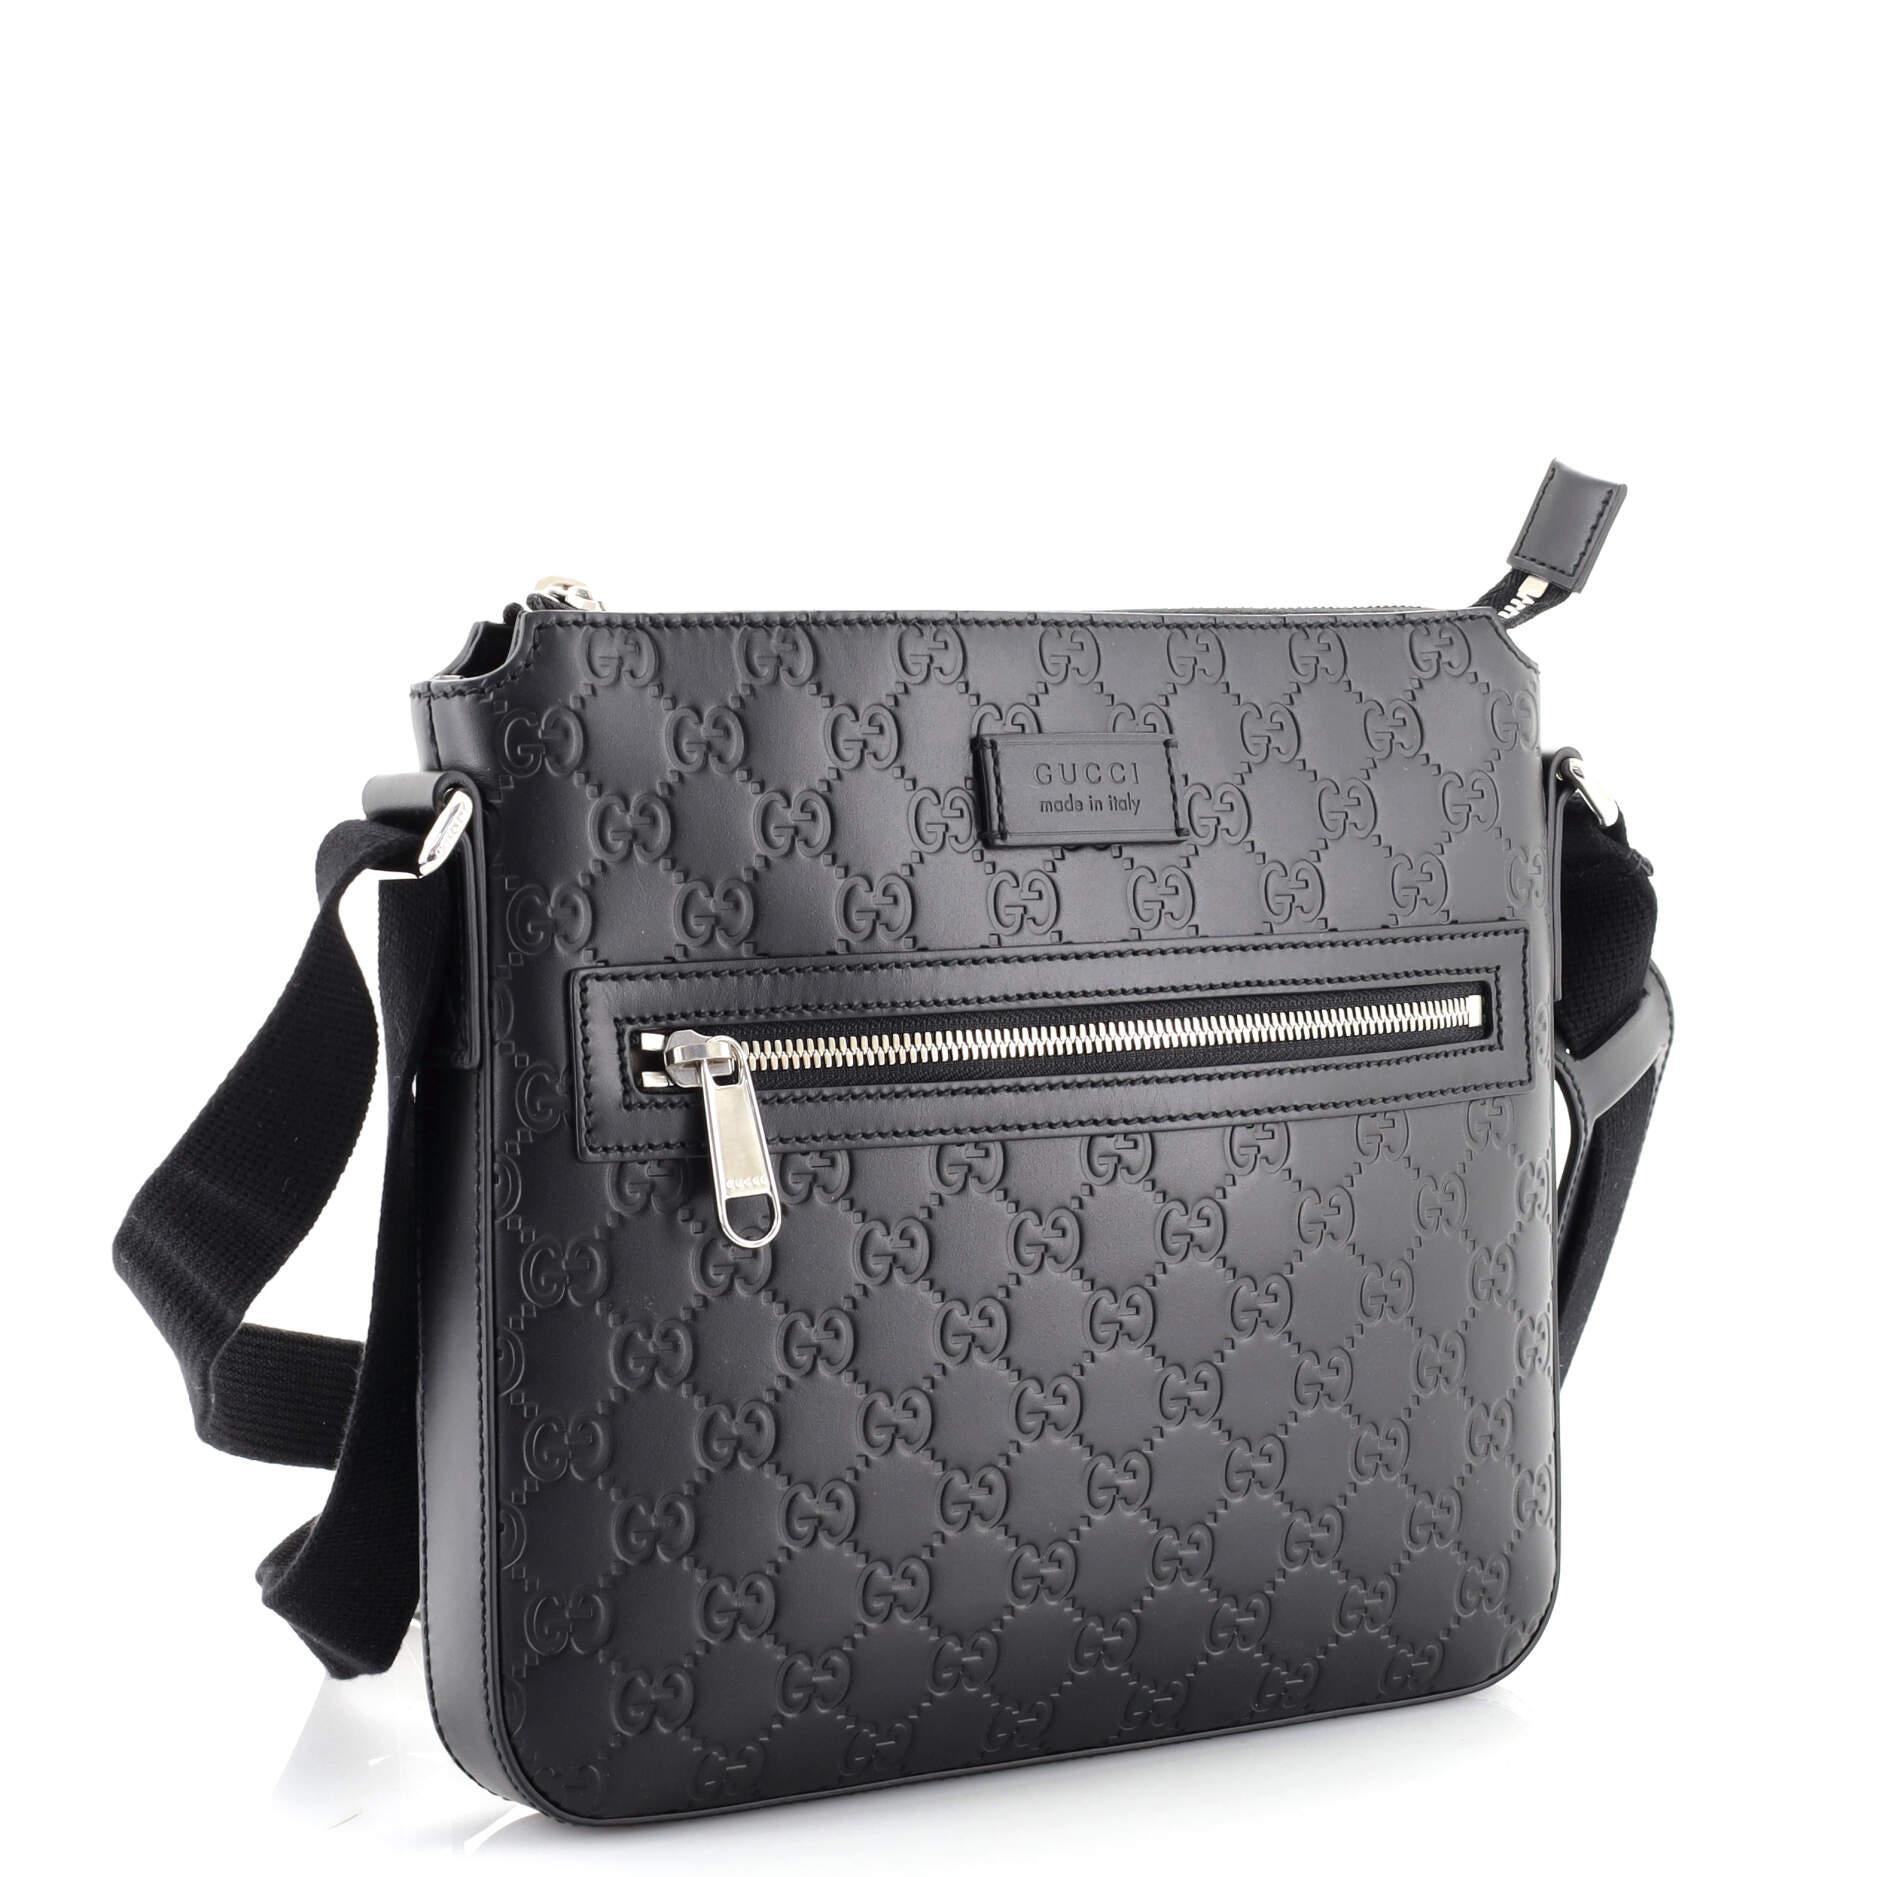 Black Gucci Signature Zip Messenger Bag Guccissima Leather Small